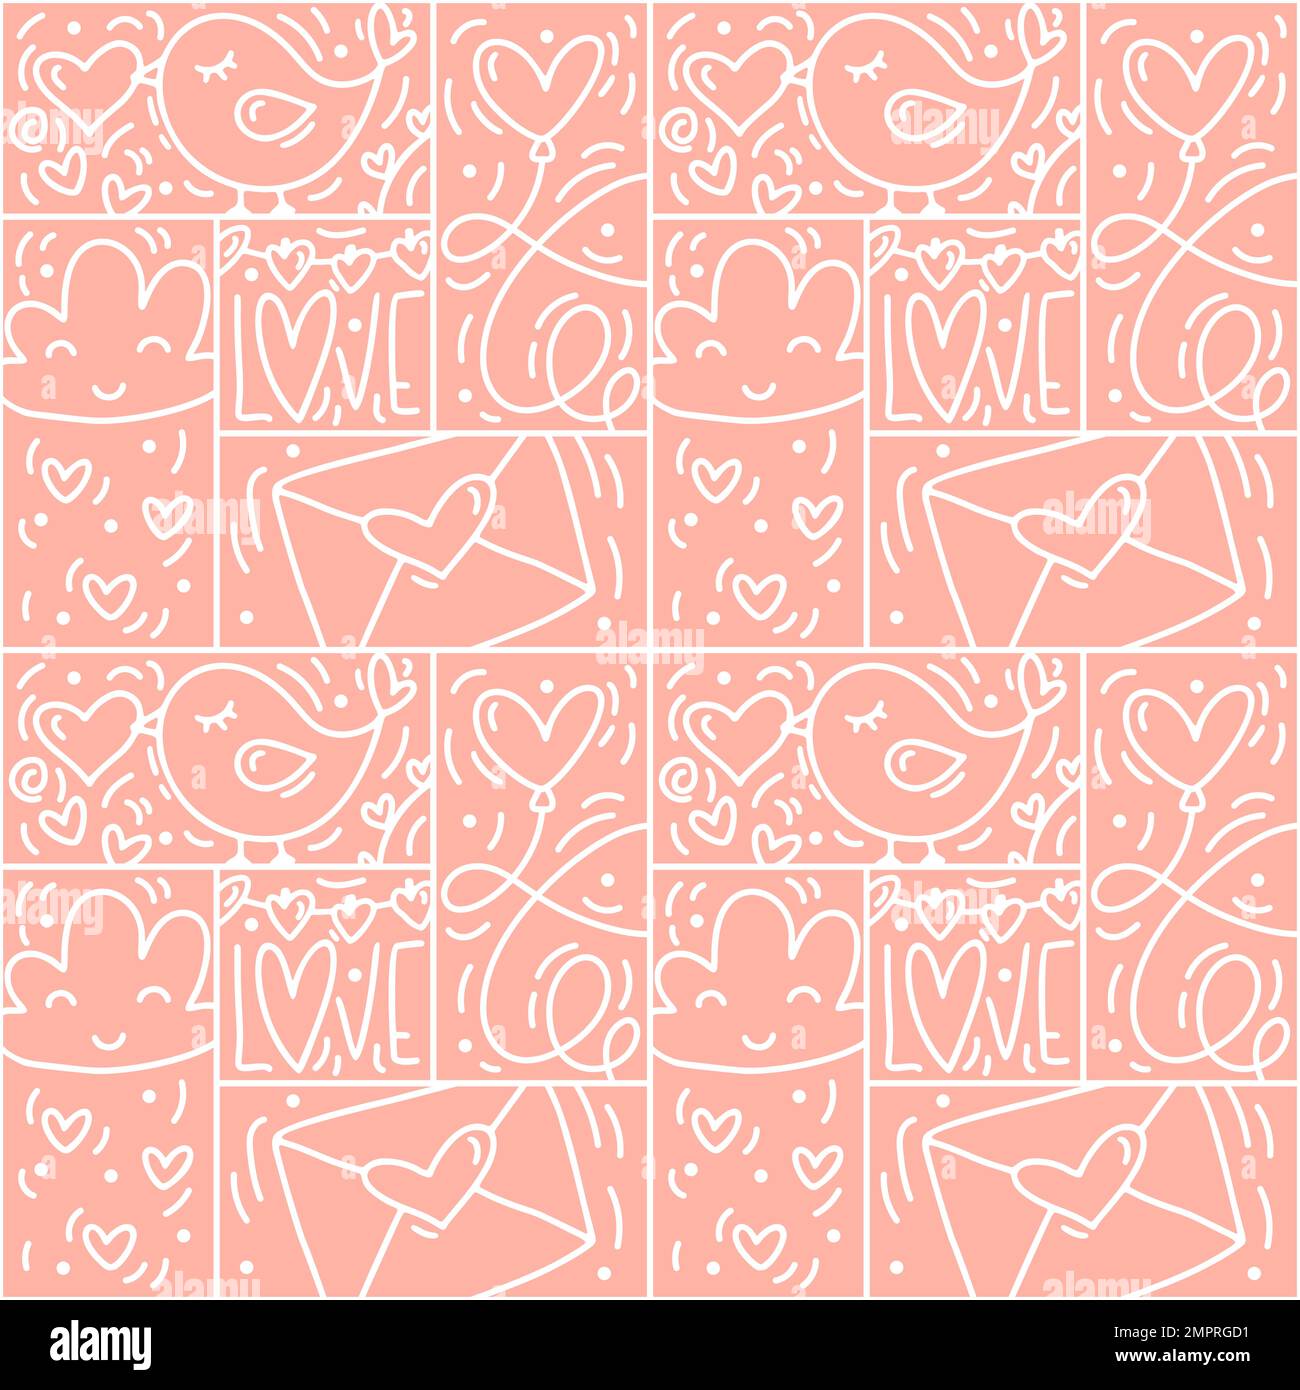 Vektor des Valentinslogo Nahtloses Muster Liebe, Vogel, Herz, Umschlaglinie und Kurzdarstellung auf pinkfarbenem Hintergrund. Handgezeichneter Monolin-Konstrukteur für Romantik Stock Vektor